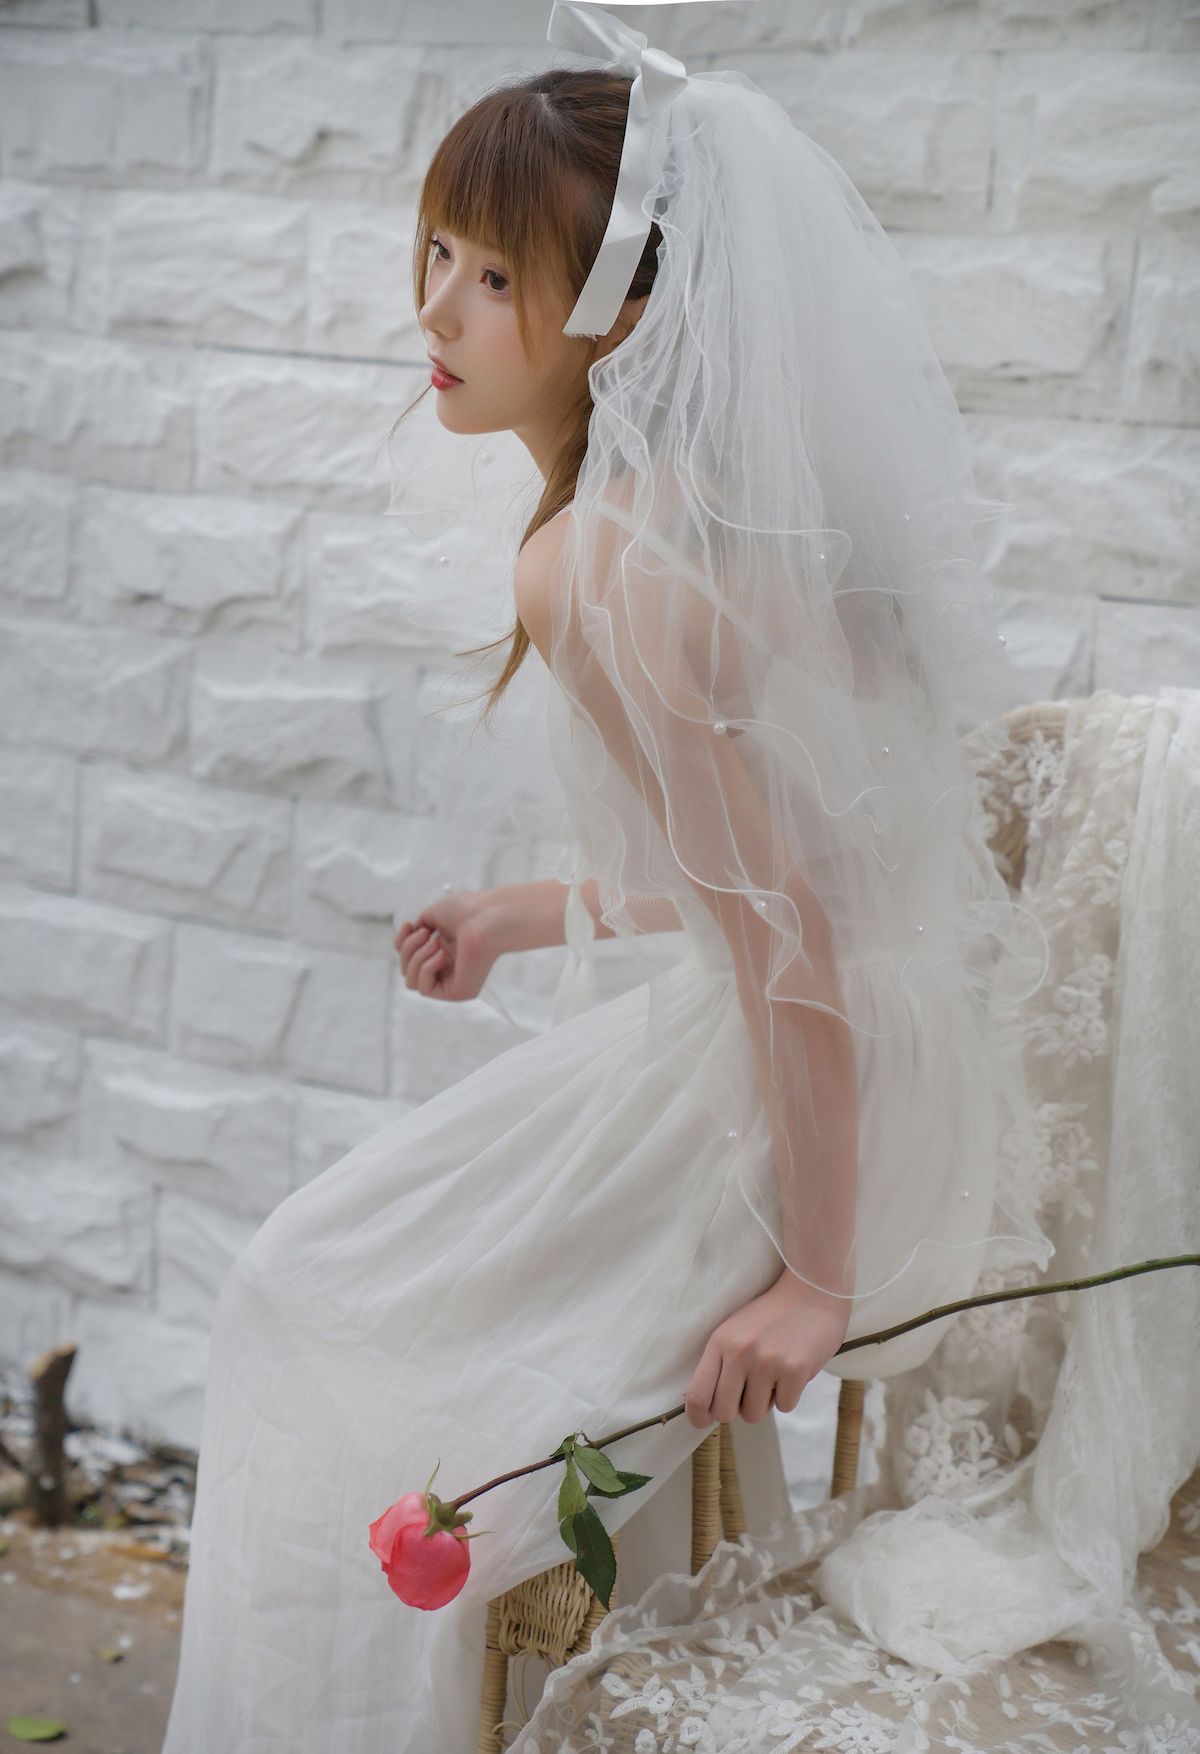 凛子酱白色婚纱长裙与鲜花相伴阳光写真